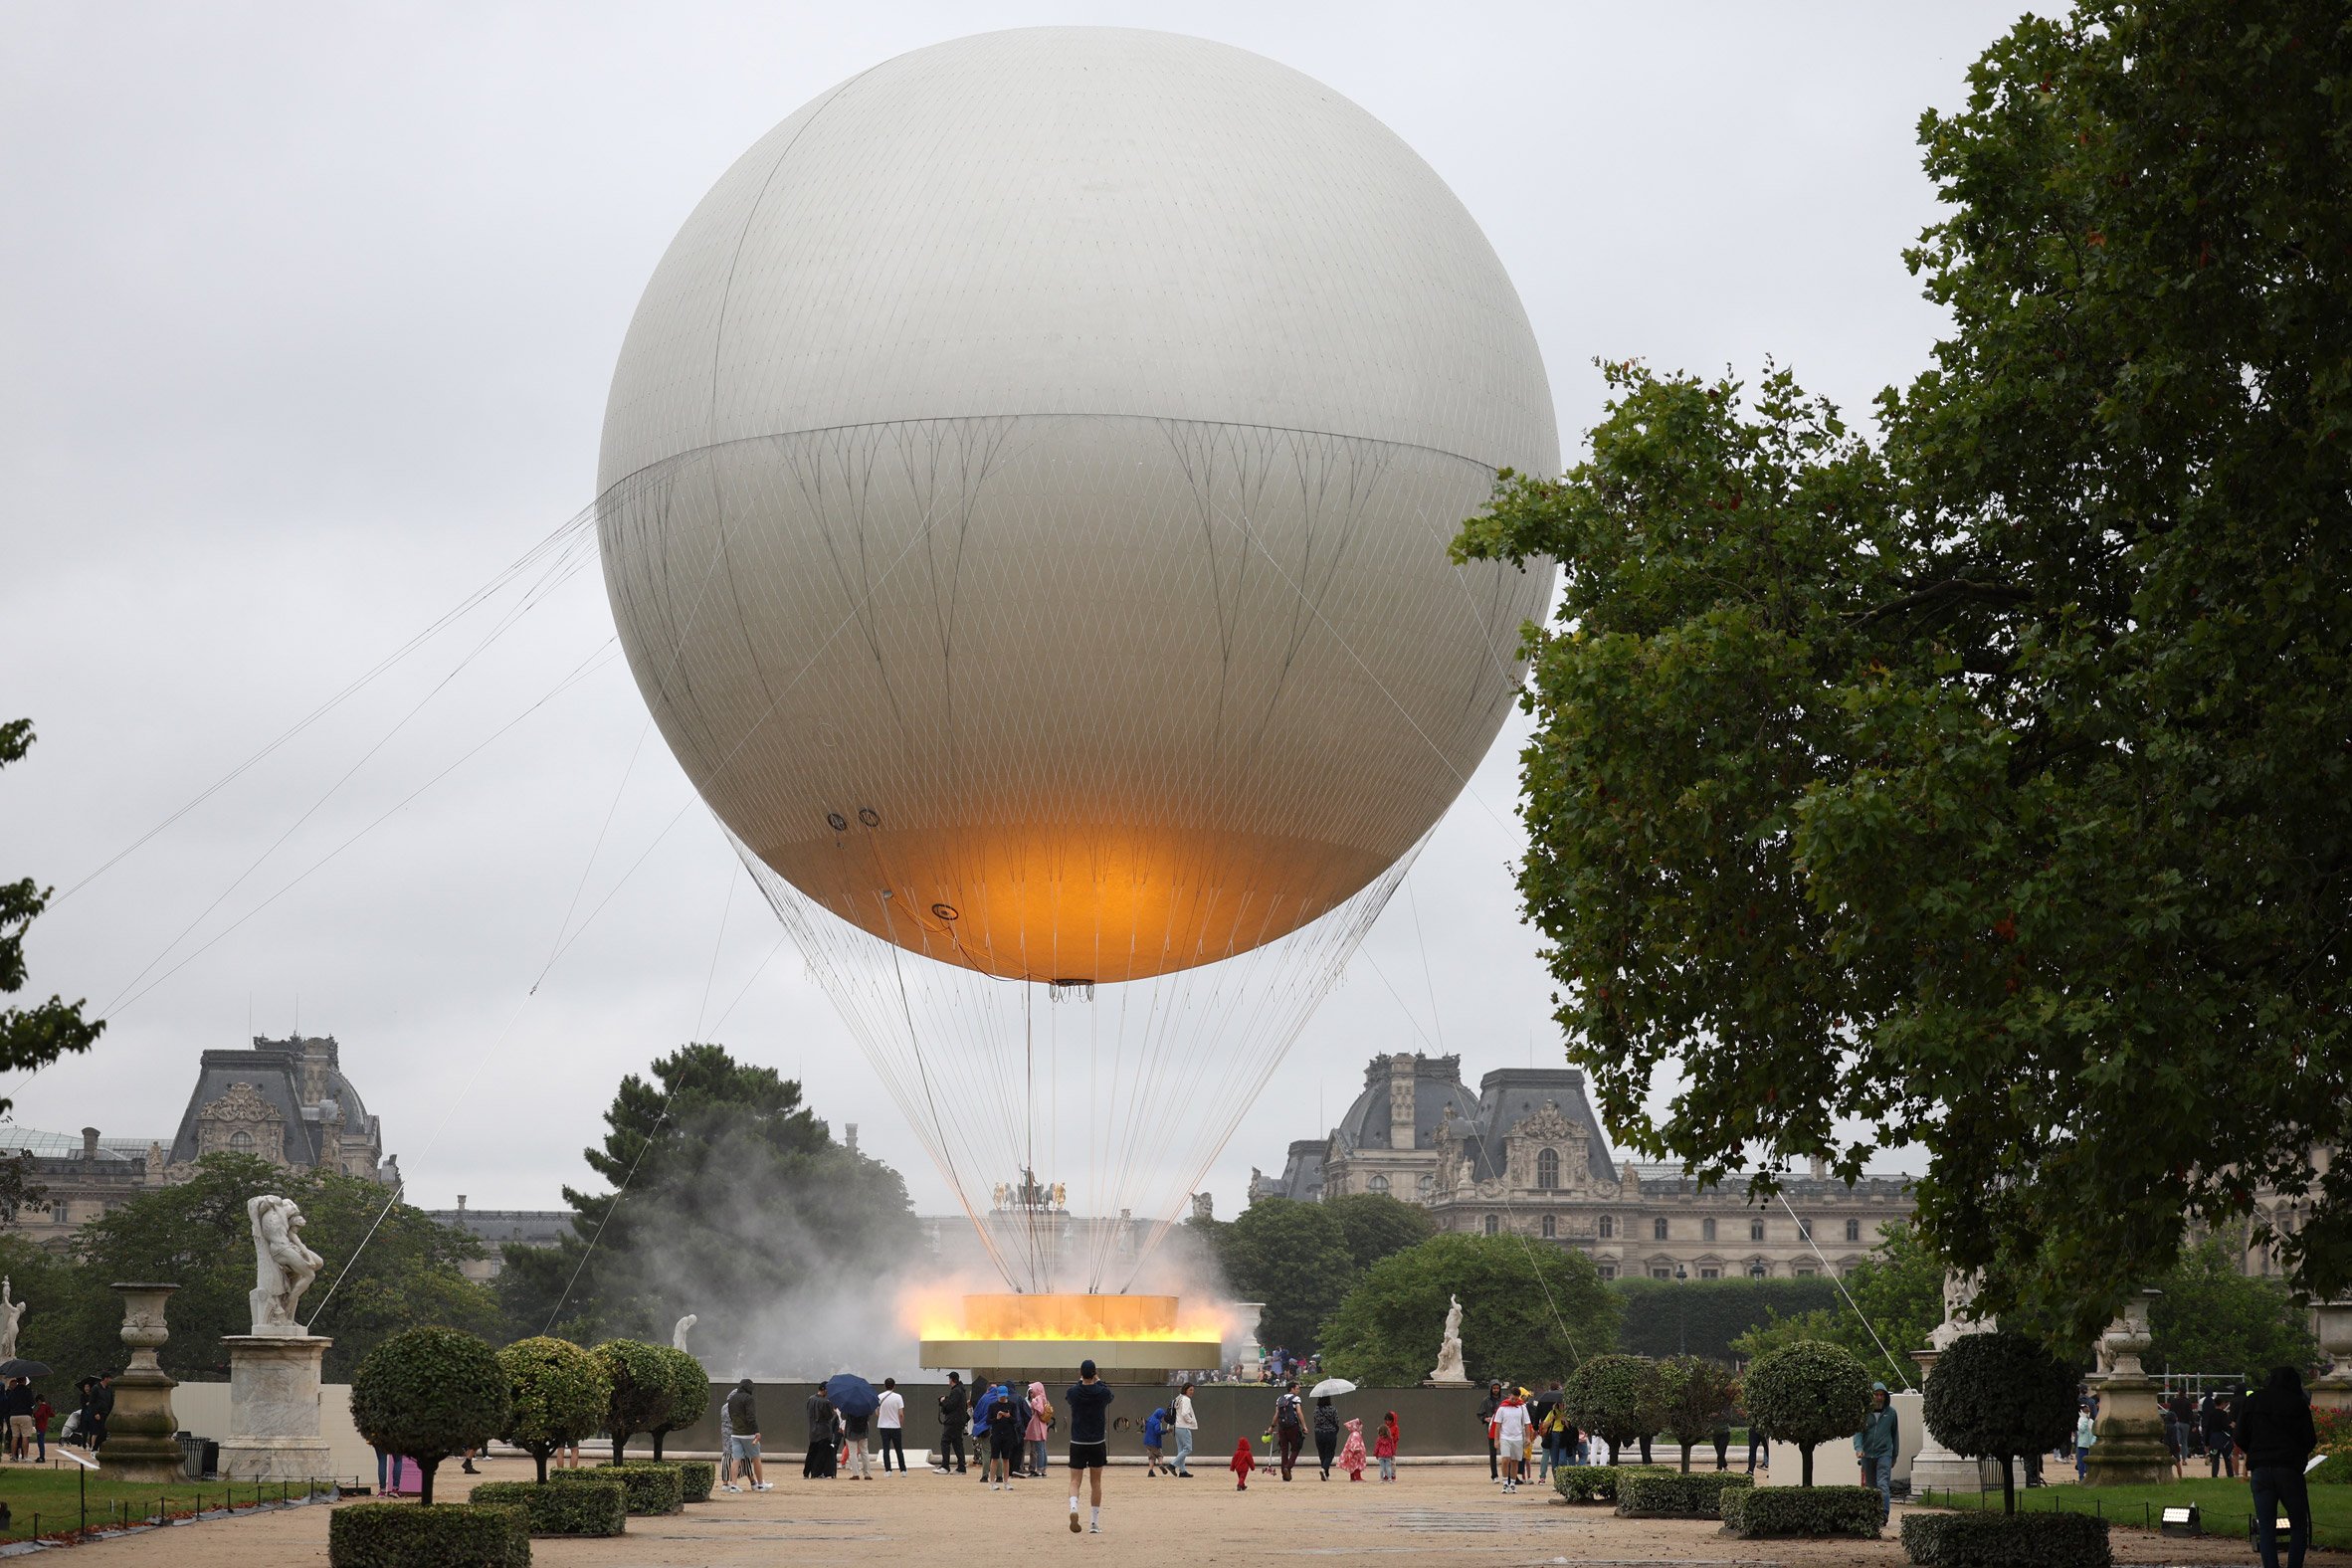 Heloum-filled balloon designed by Matthieu Lehanneur